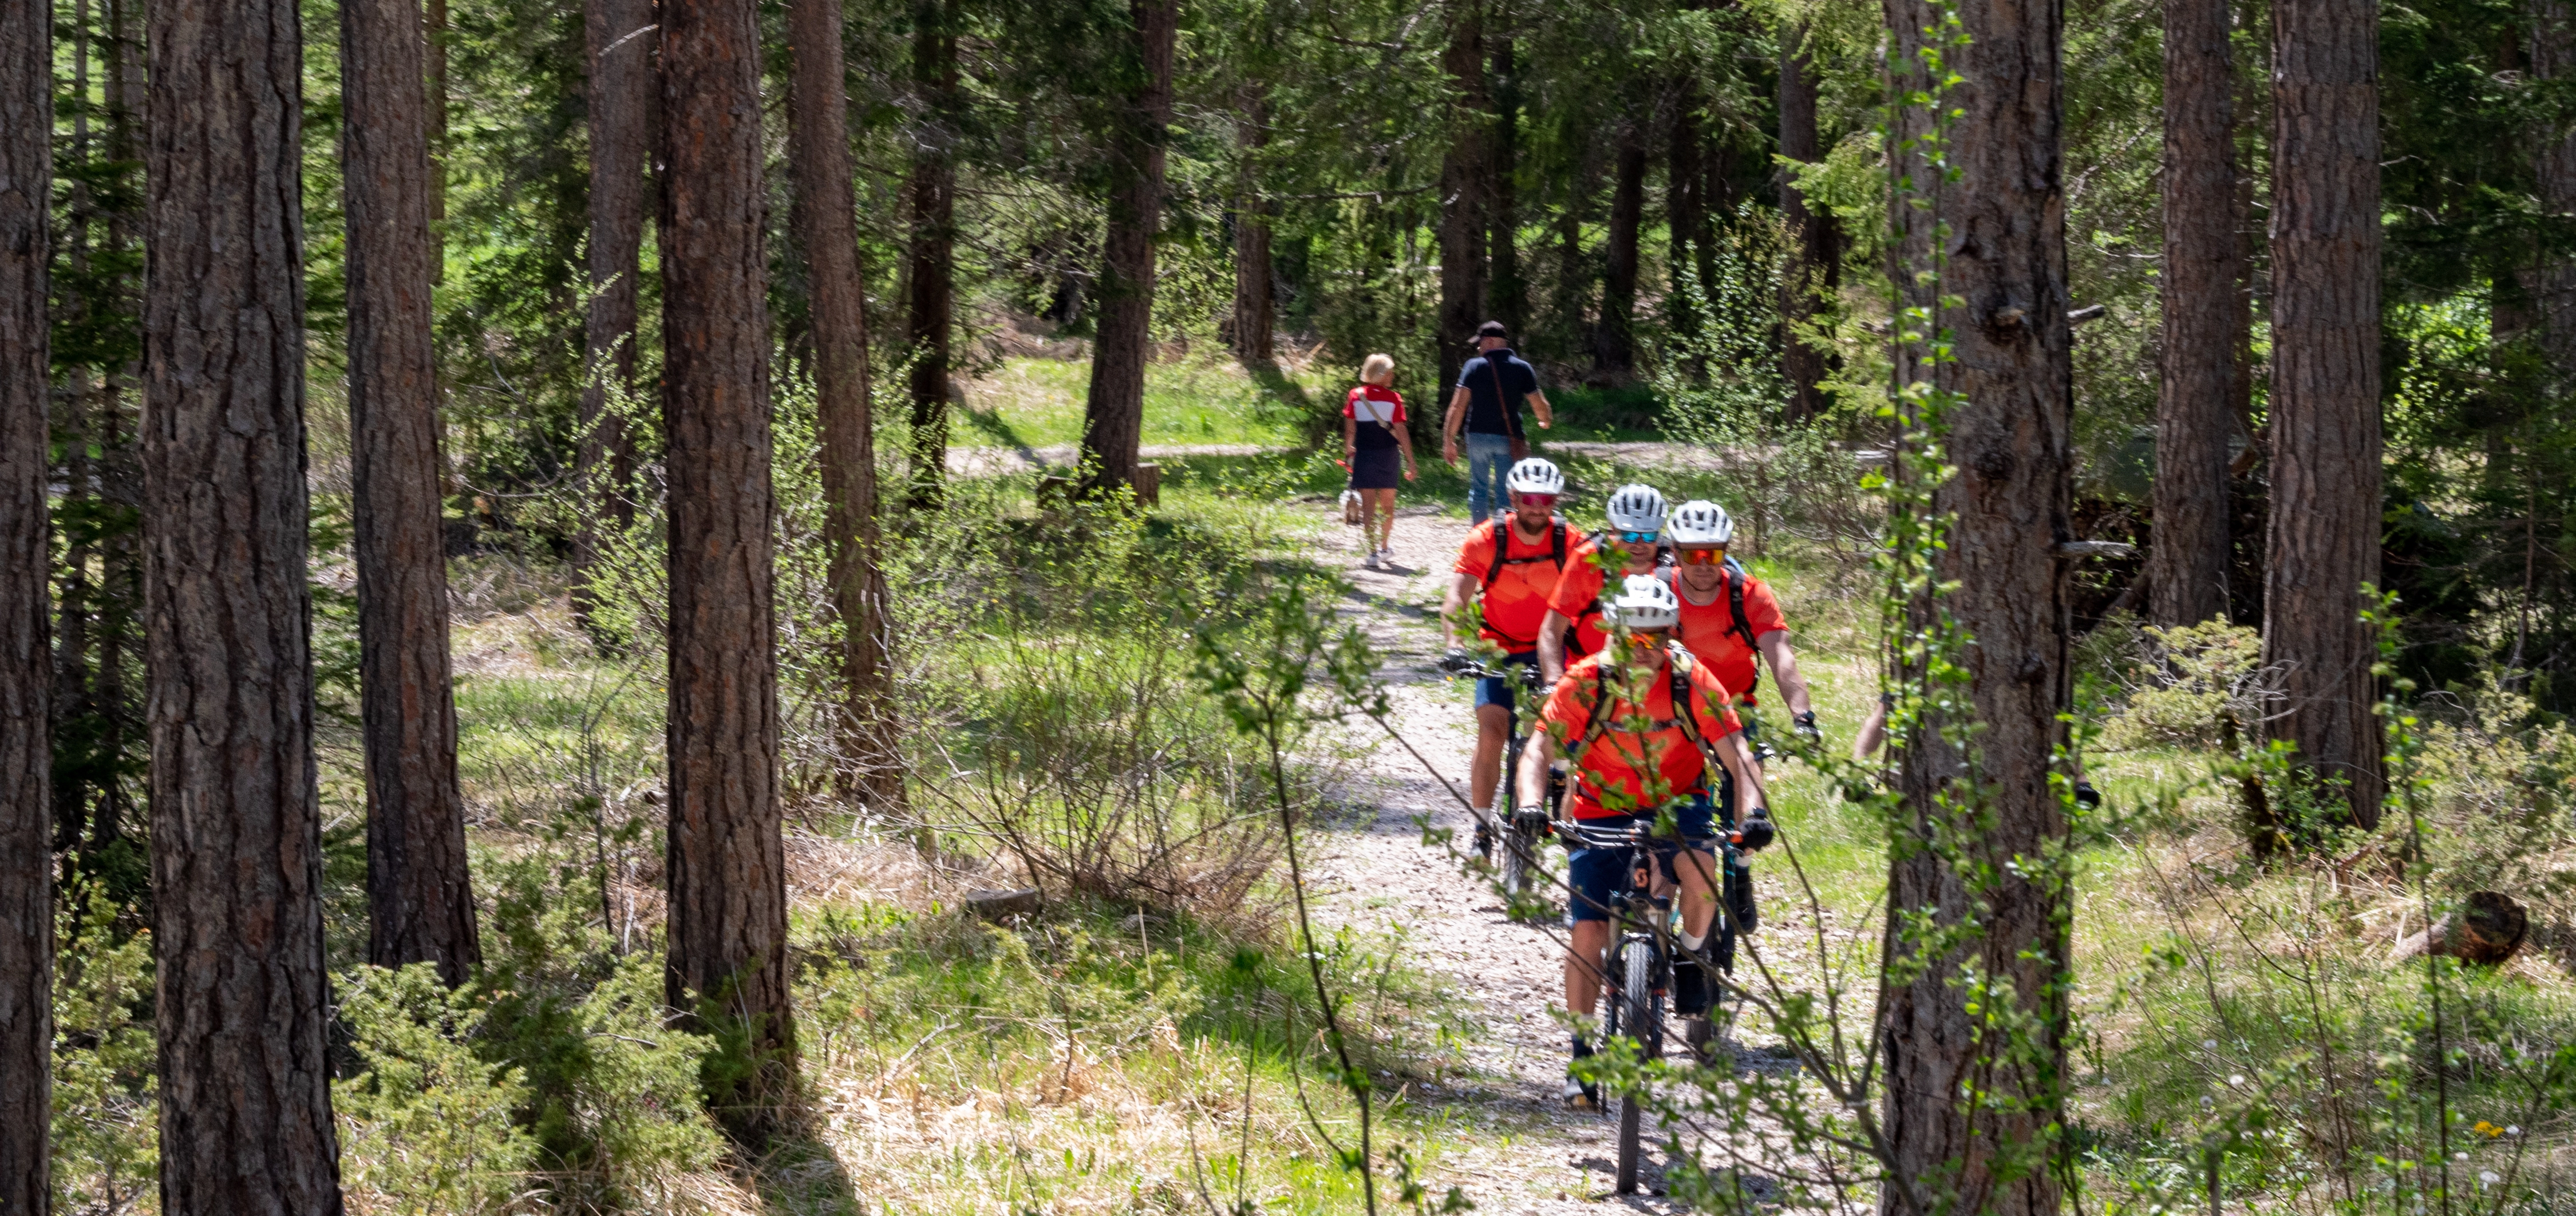 Unsere Bikeguides finden die richtige Tour für euch, auch Waldtouren können sehr entspannend sein